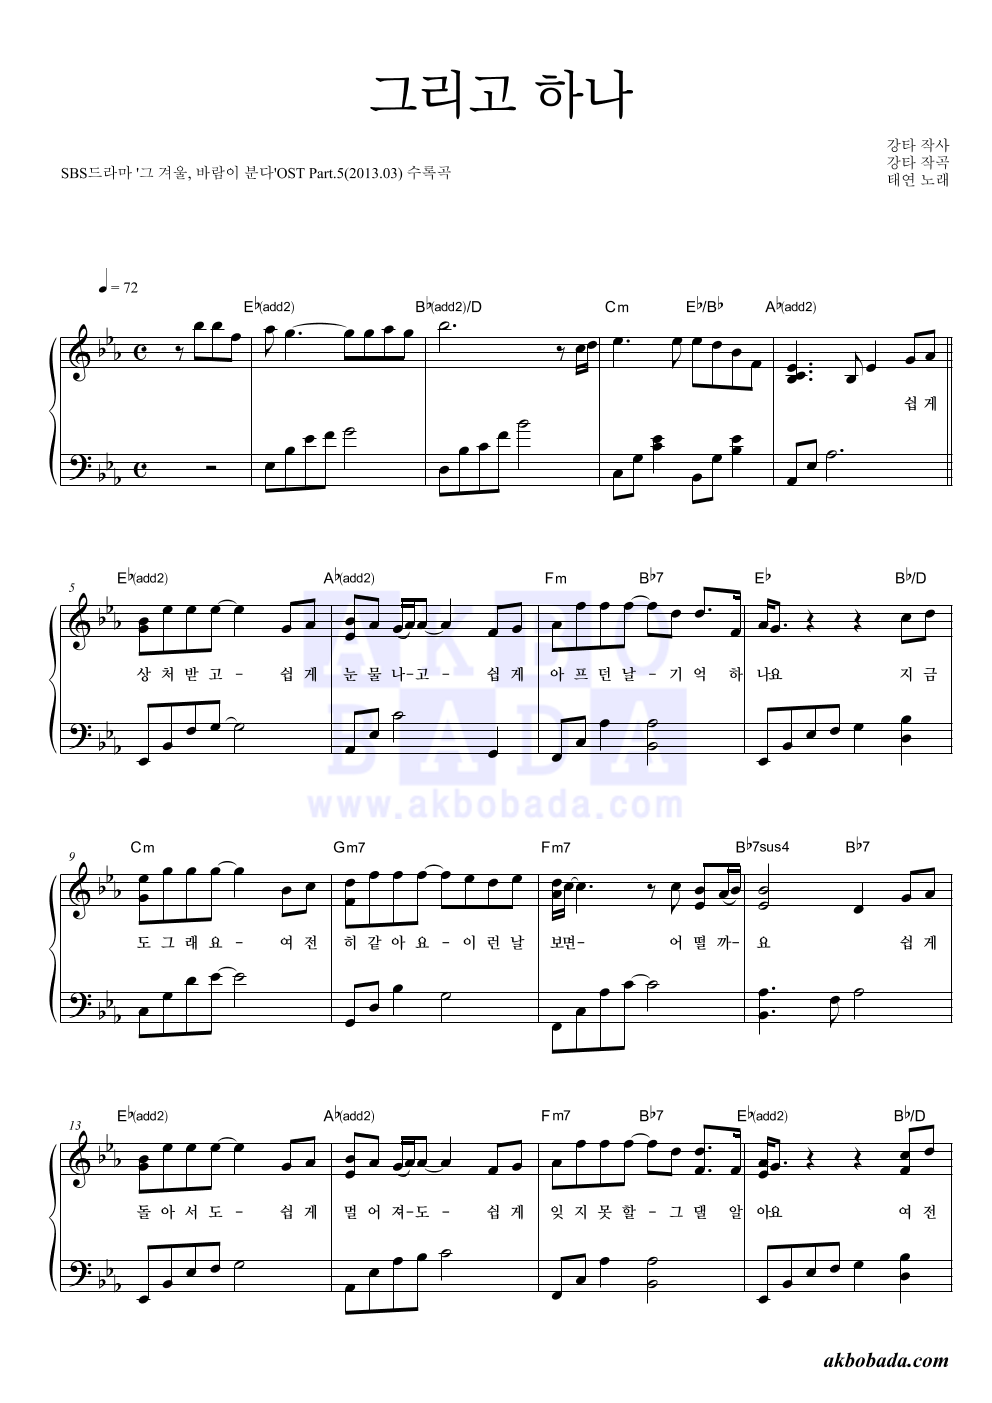 태연 - 그리고 하나 피아노 2단 악보 